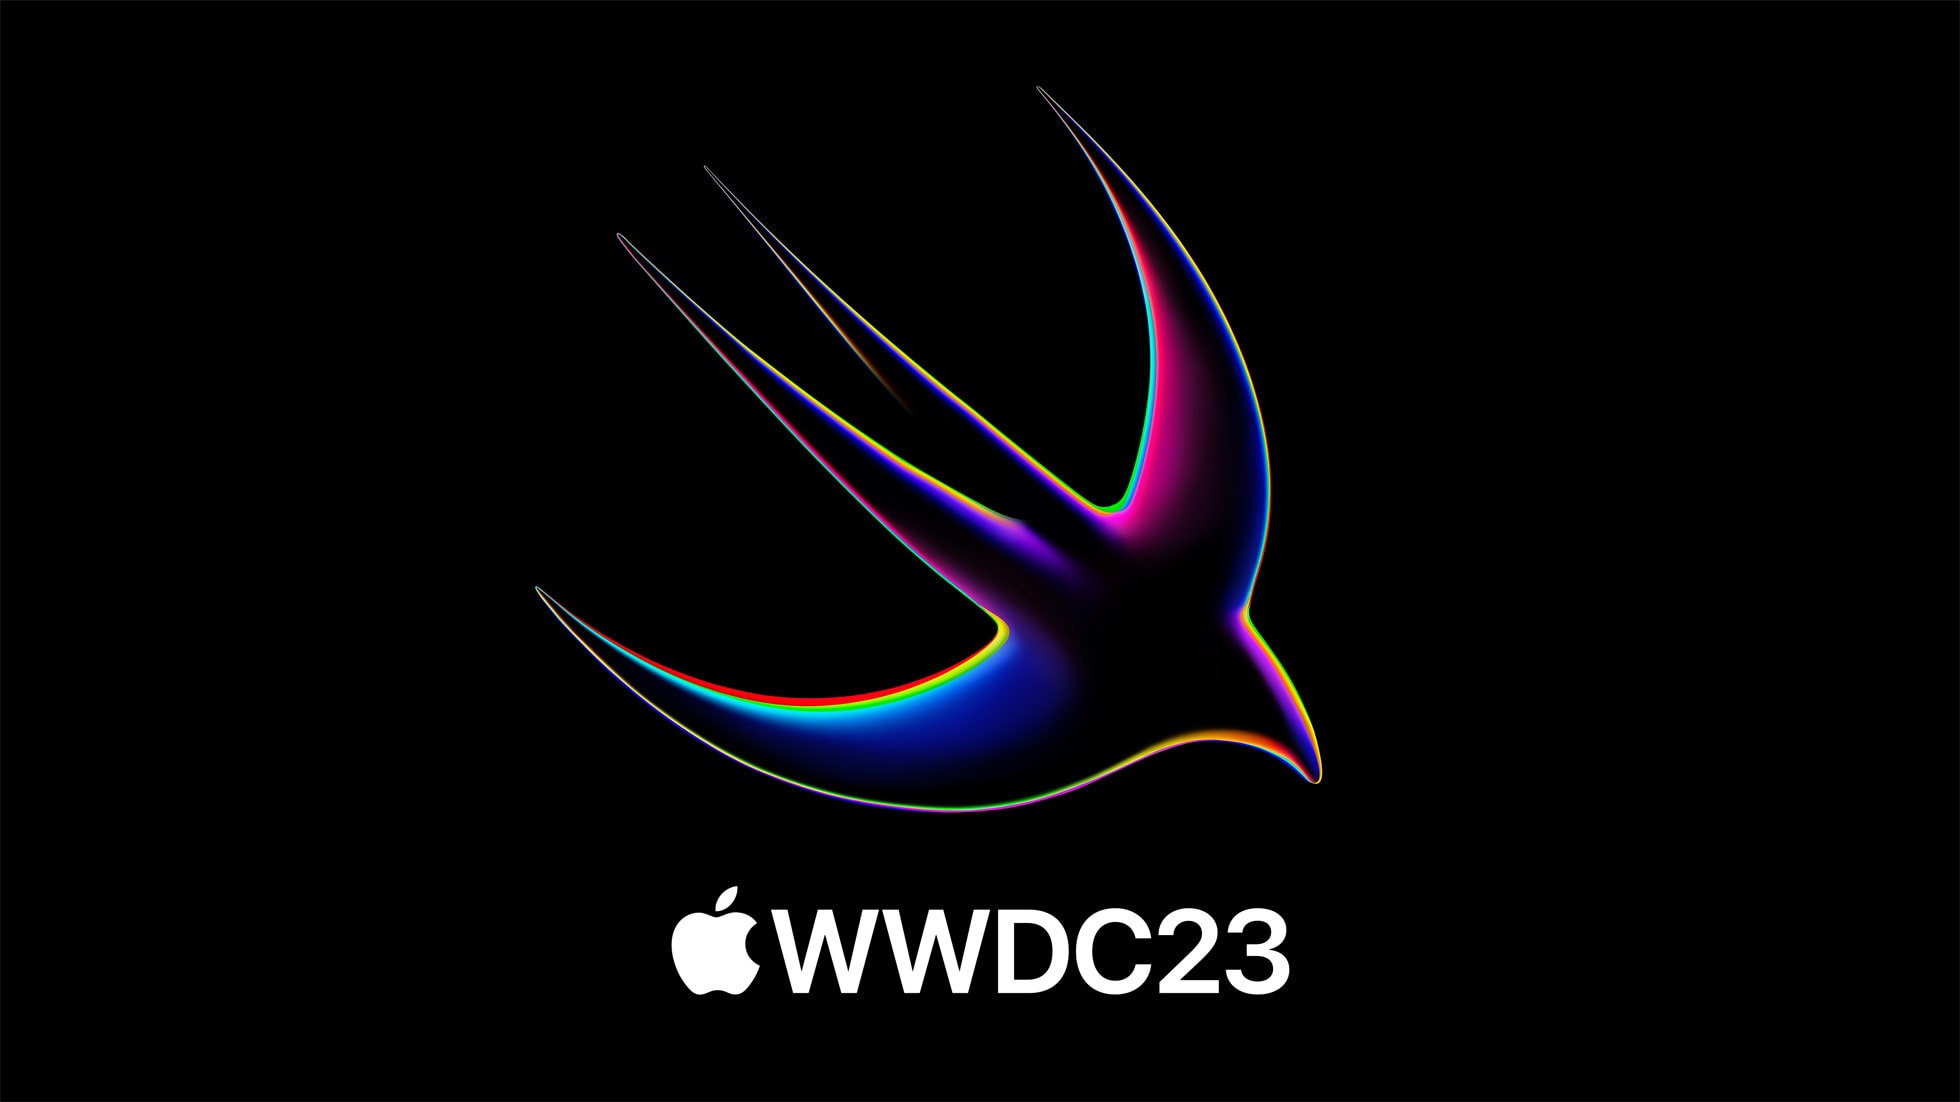 L'app Developer di Apple aggiornata per la WWDC